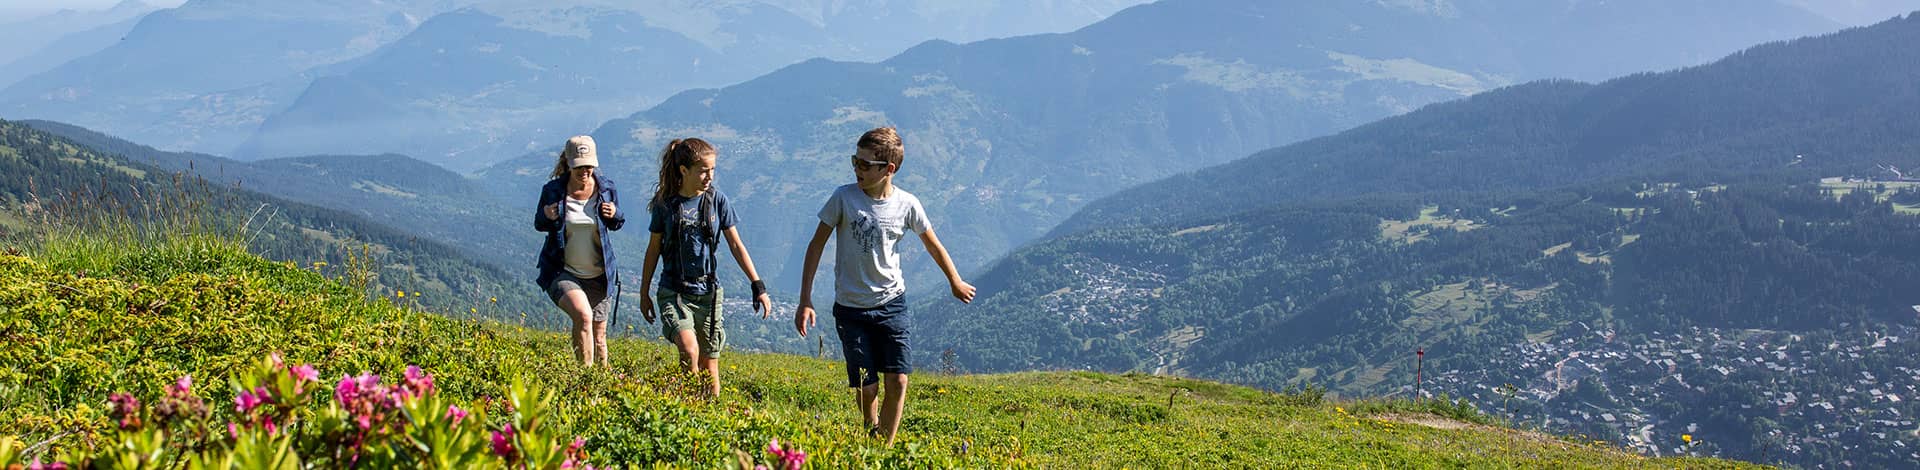 Randonnée Alpes à Méribel en Savoie dans Les 3 Vallées, itinéraires randonnée pour des vacances en famille en été